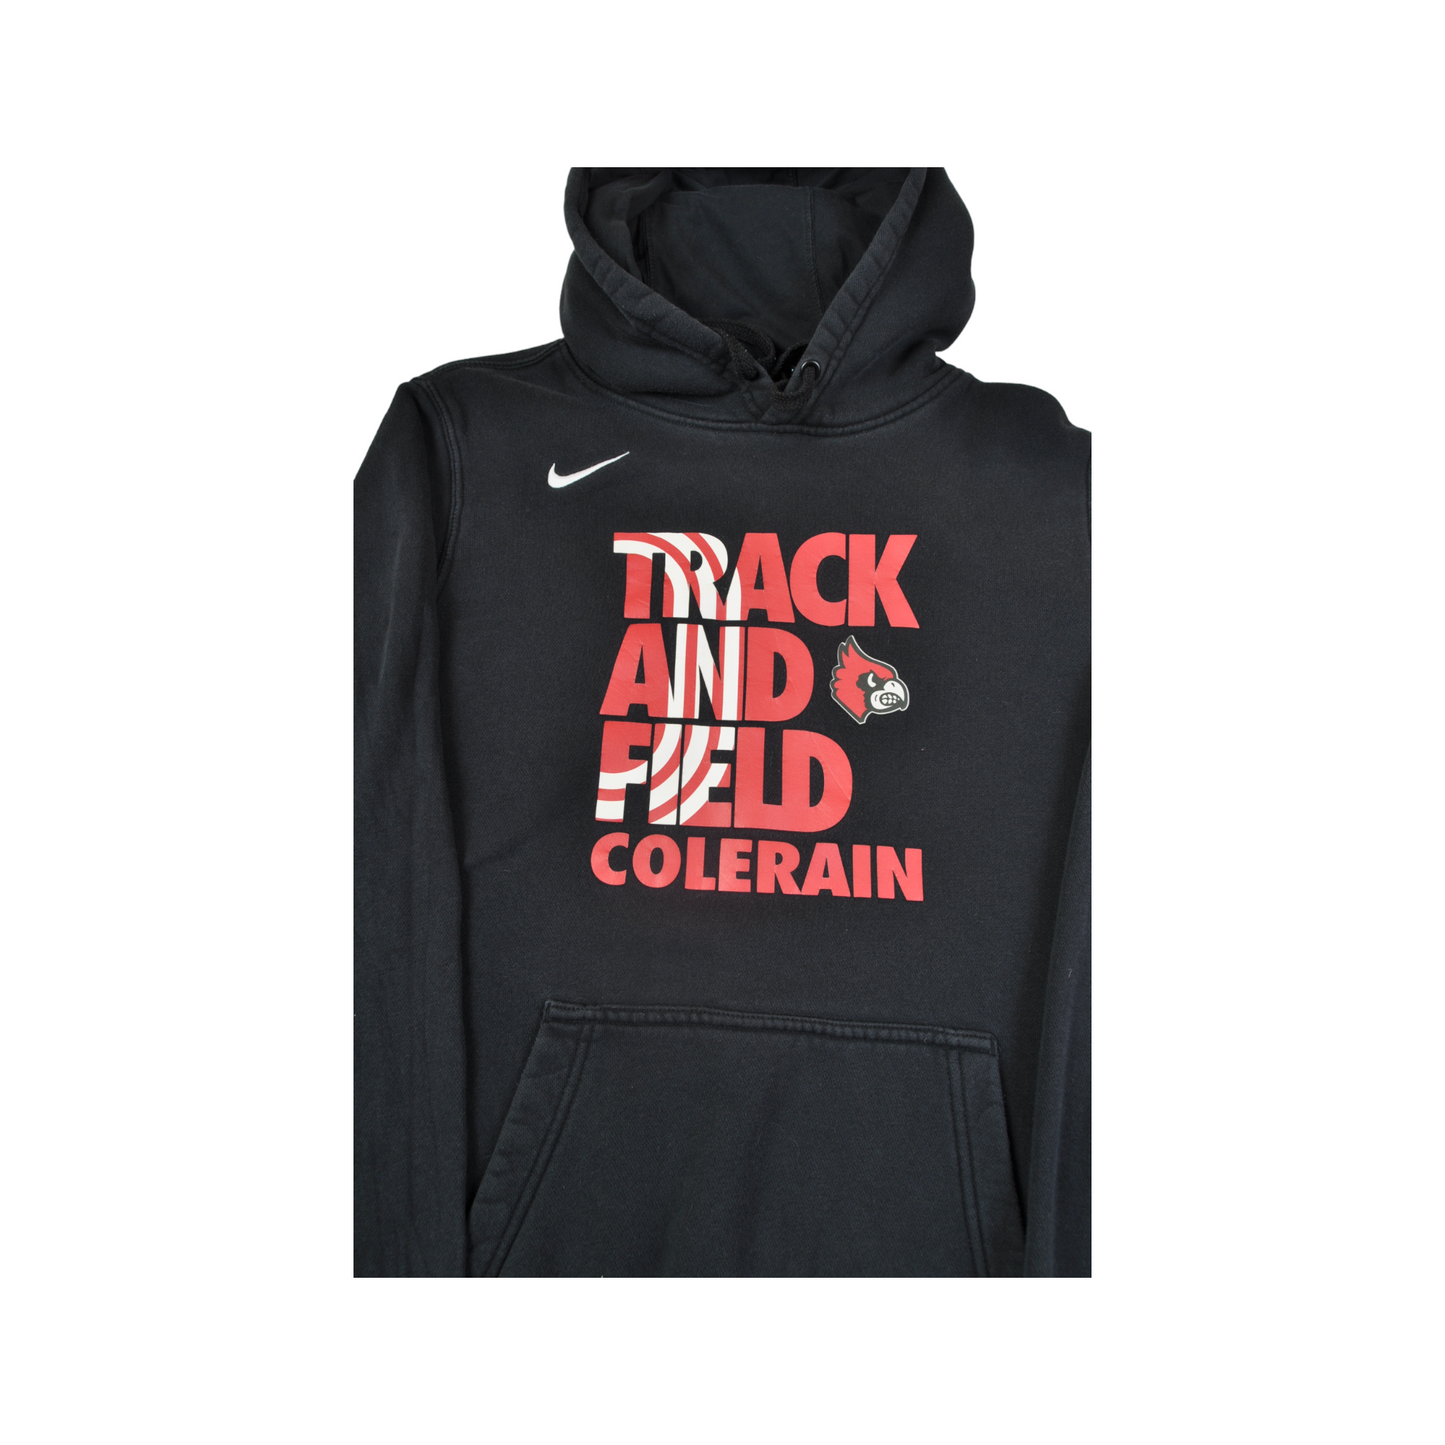 Vintage Nike Colerain Track and Field Hoodie Sweatshirt Black Small